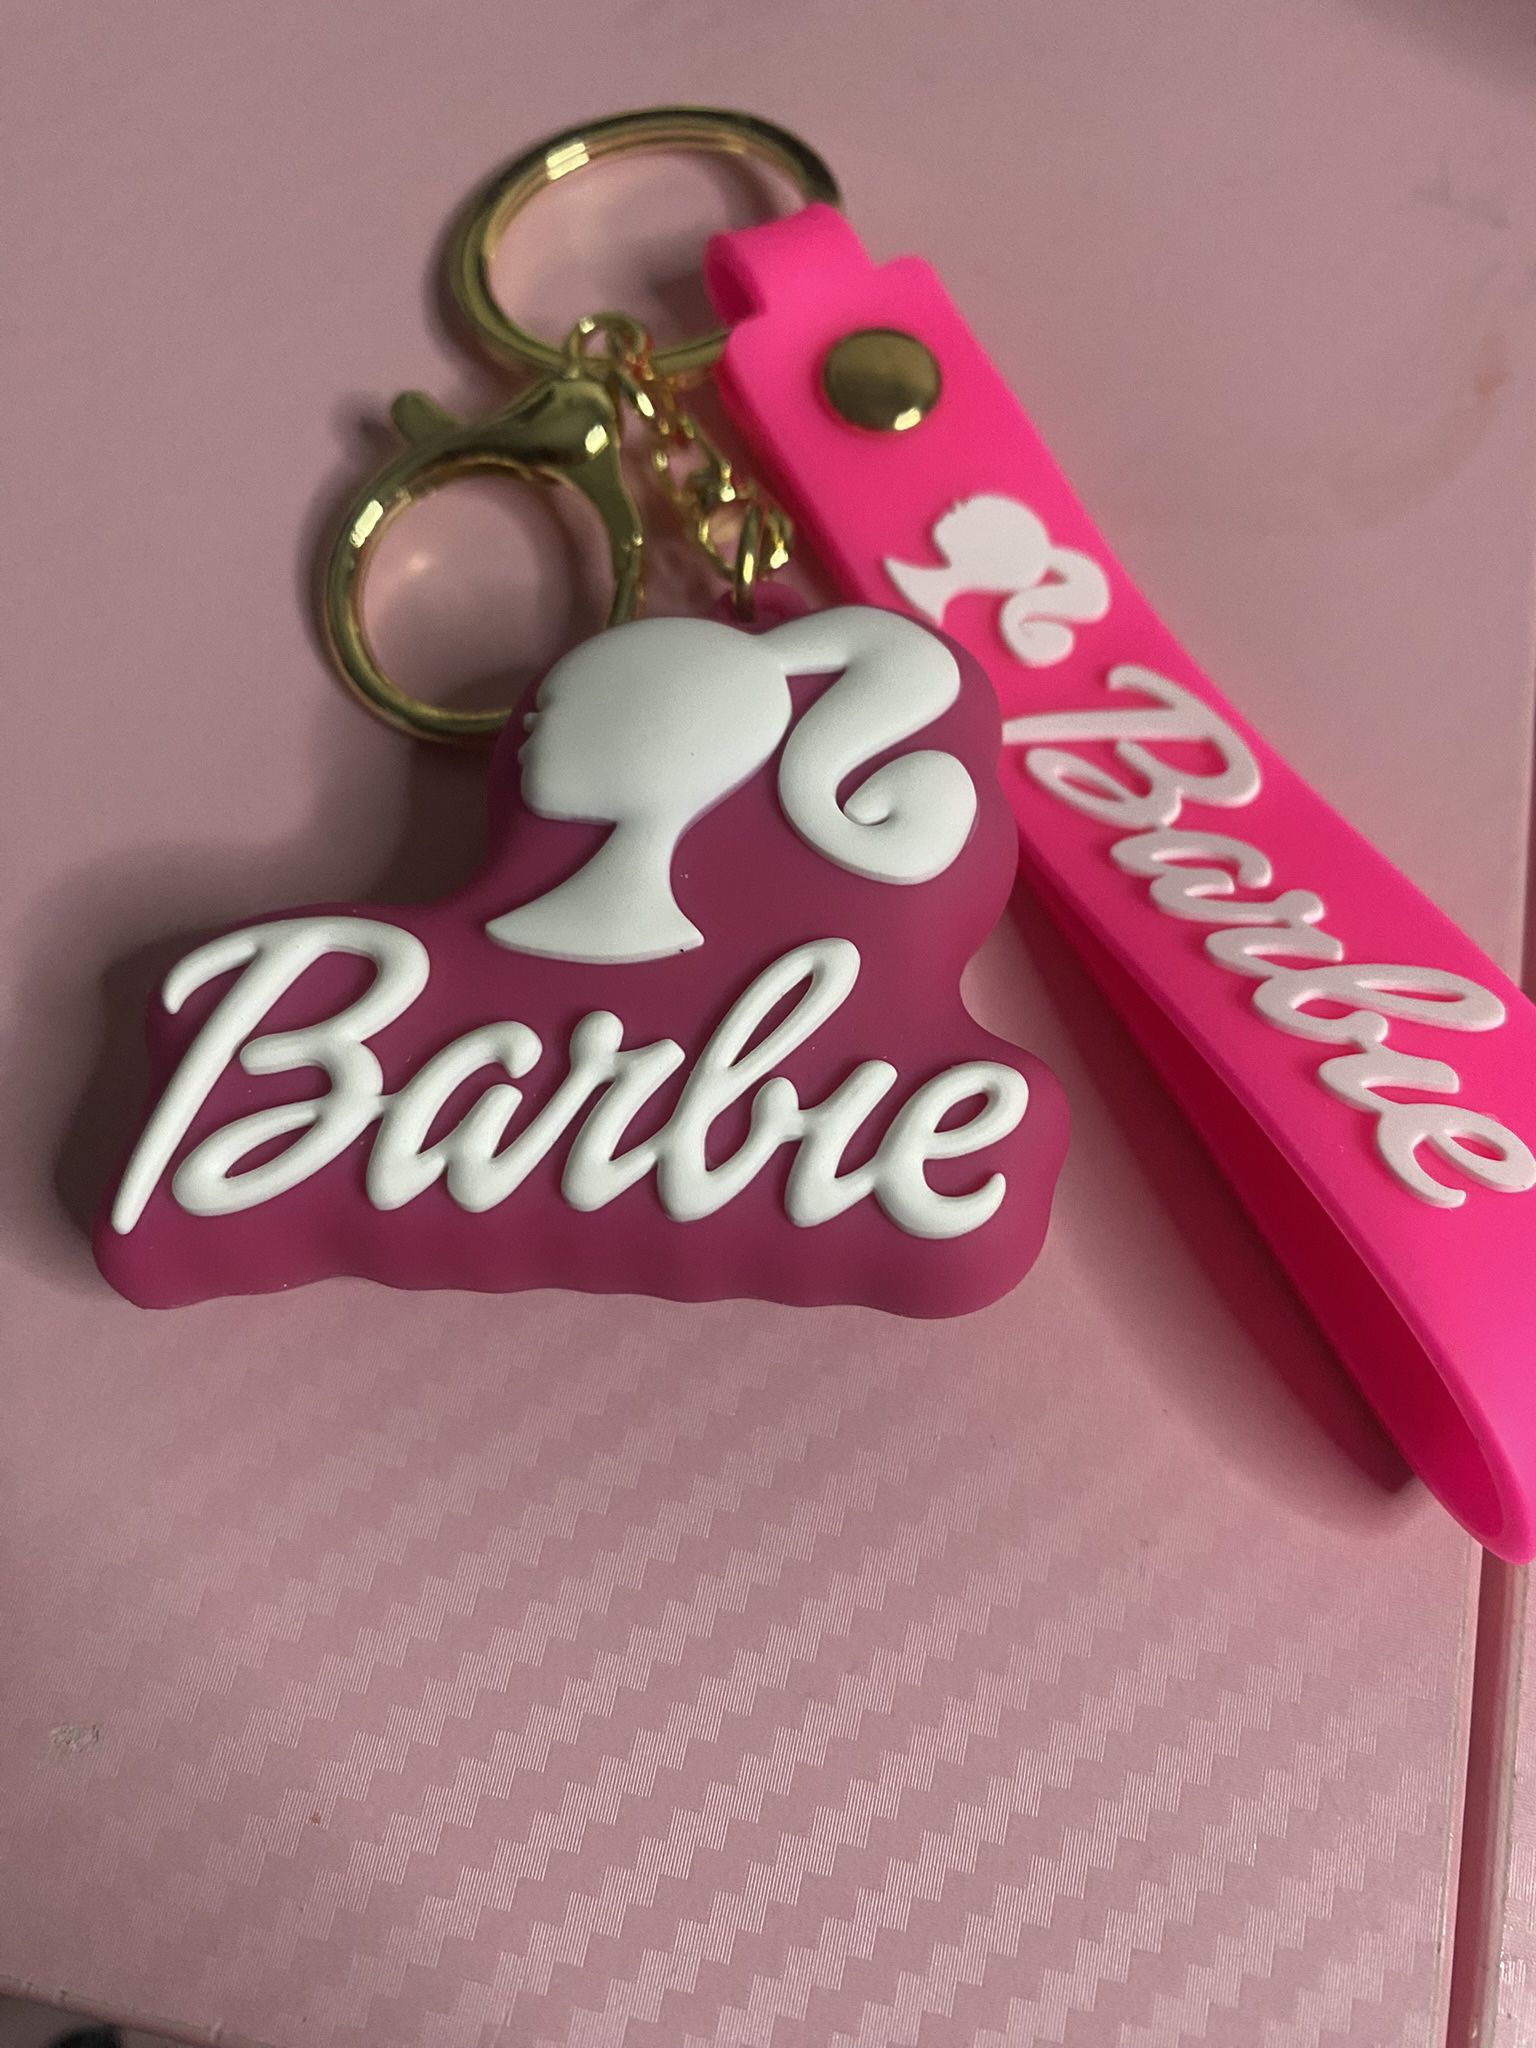 Barbie keychain 